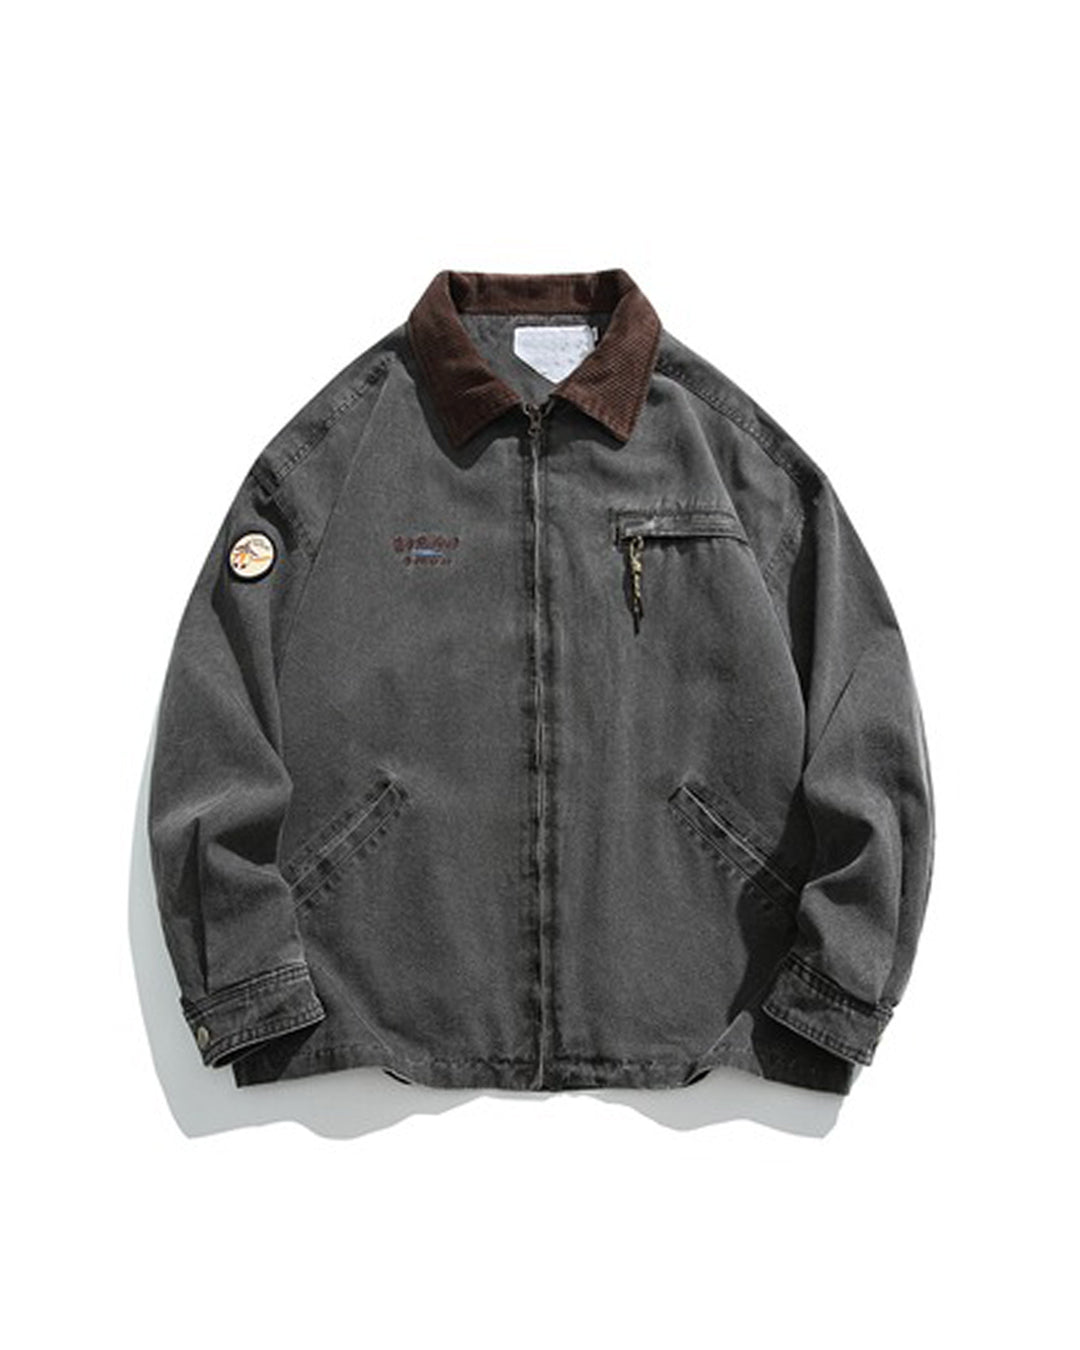 14,260円【Christian dior】vintage jacket